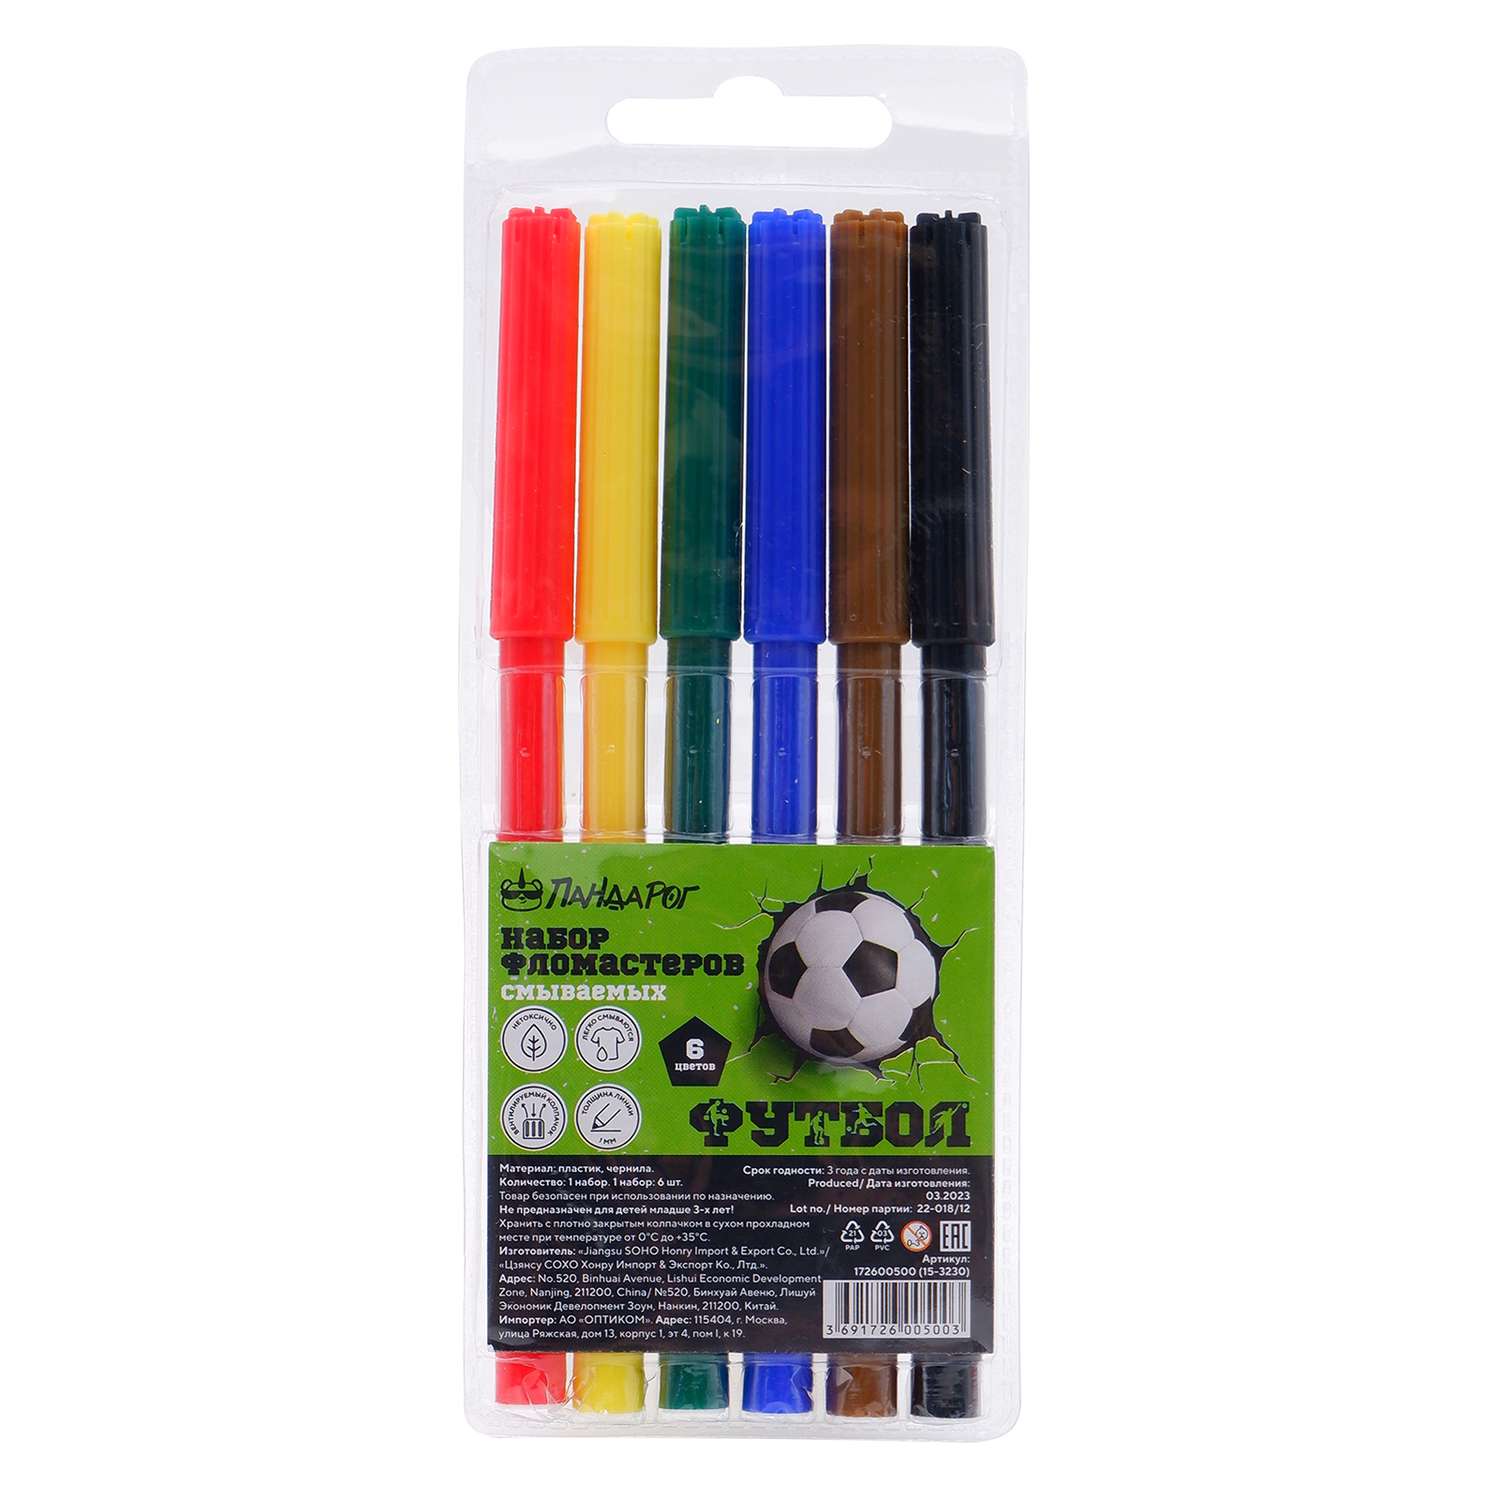 Набор фломастеров ПАНДАРОГ Football 6 цвет вентилируемый колпачок в цвет чернилв пластиковом блистере смываемые - фото 1